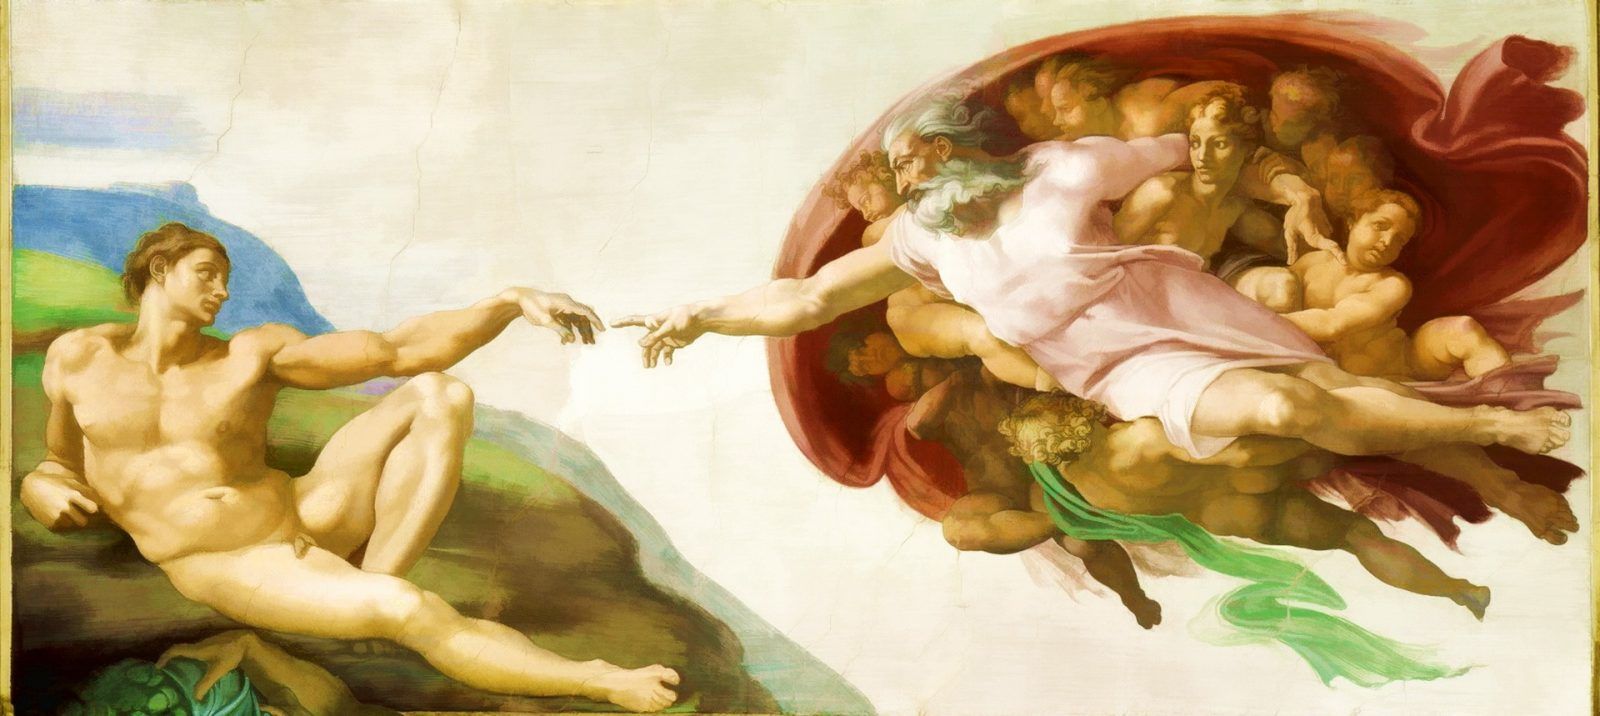 Микеланджело Буонарроти: «Сотворение Адама» (La creazione di Adamo) — фреска Микеланджело, написанная около 1511 года. Фреска является четвёртой из девяти центральных композиций потолка Сикстинской капеллы, посвящённых девяти сюжетам книги Бытия. Фреска иллюстрирует эпизод: «И сотворил Бог человека по образу Своему, по образу Божию сотворил его…» (Бытие,1:27). «Сотворение Адама» — одна из самых выдающихся композиций росписи Сикстинской капеллы. В бесконечном пространстве летит Бог-Отец, окружённый бескрылыми ангелами, с реющей белой туникой. Правая рука вытянута навстречу руке Адама и почти касается её. Лежащее на зелёной скале тело Адама постепенно приходит в движение, пробуждается к жизни. Вся композиция сконцентрирована на жесте двух рук. Рука Бога даёт импульс, а рука Адама принимает его, давая всему телу жизненную энергию. Тем, что их руки не соприкасаются, Микеланджело подчеркнул невозможность соединения божественного и человеческого. В образе Бога, по замыслу художника, преобладает не чудесное начало, а гигантская творческая энергия. В образе Адама Микеланджело воспевает силу и красоту человеческого тела. Фактически, перед нами предстаёт не само сотворение человека, а момент, в который тот получает душу, страстное искание божественного, жажду познания. Сикстинская капелла (Cappella Sistina) — бывшая домовая церковь в Ватикане. Построена в 1473-1481 годах архитектором Джордже де Дольчи, по заказу папы римского Сикста IV, откуда и произошло название...